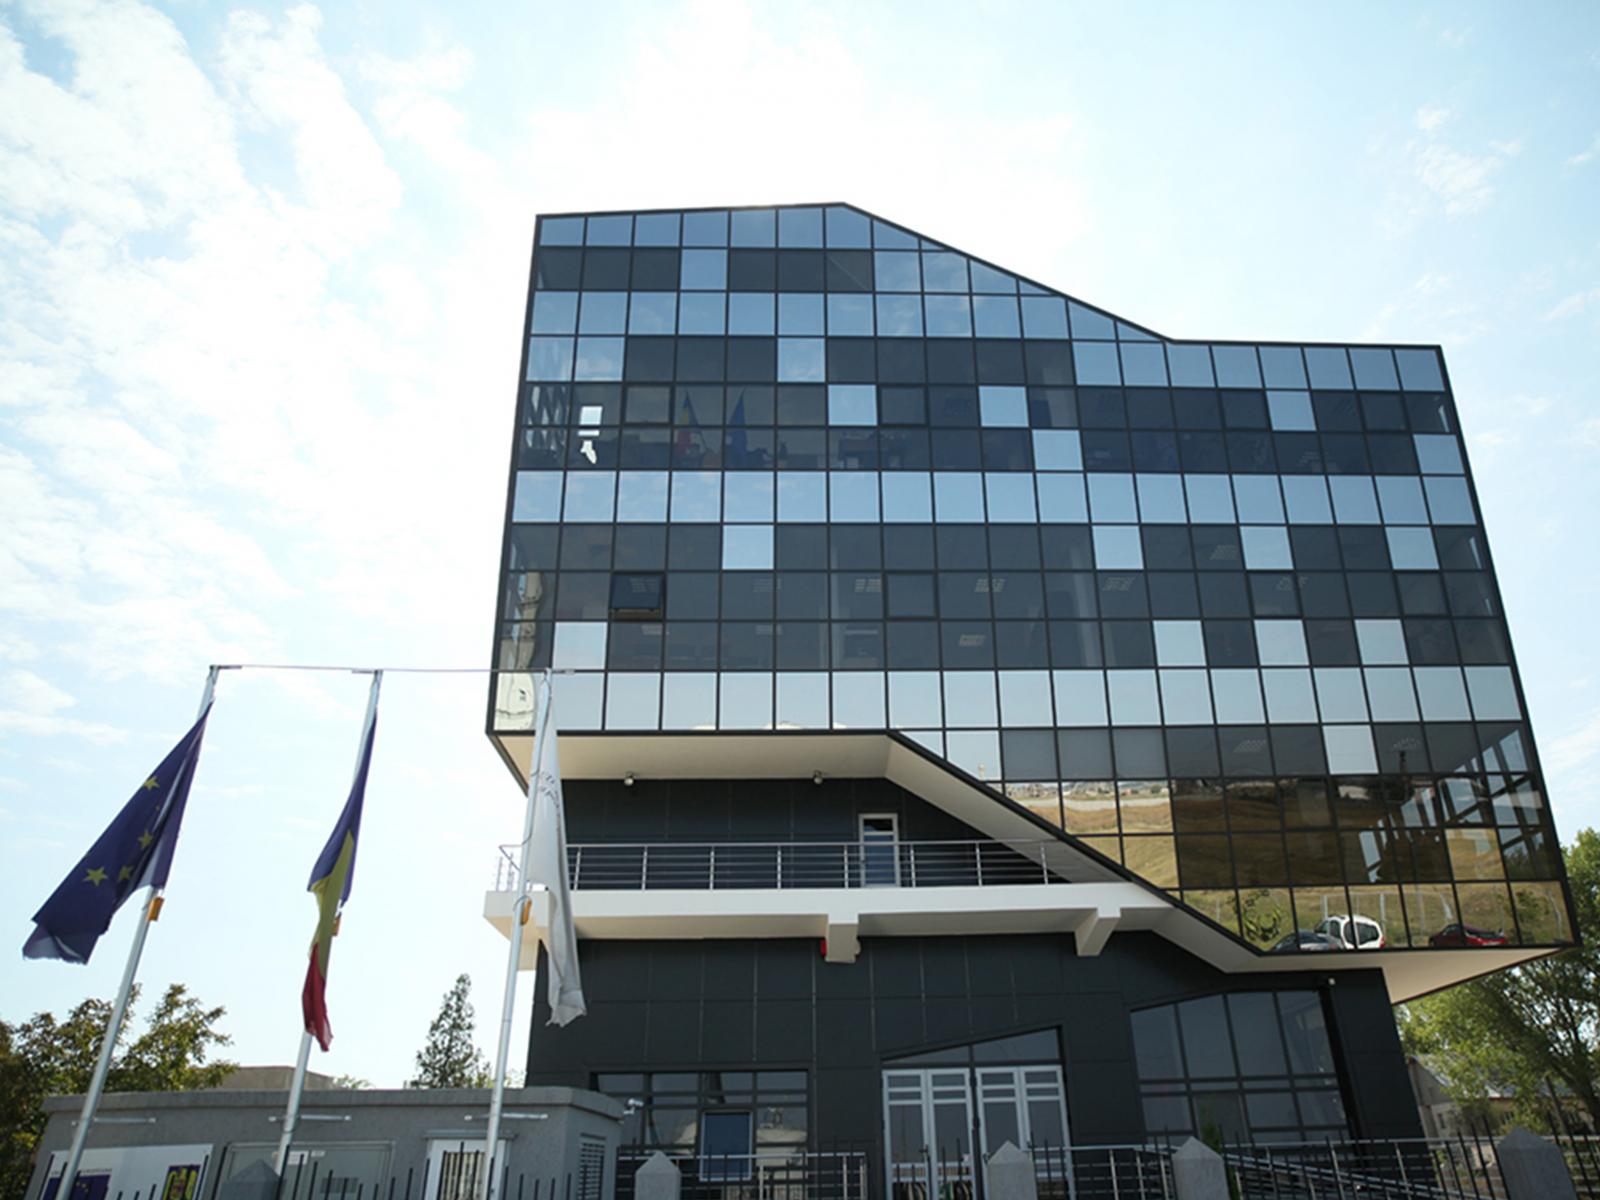 Concurs pentru ocuparea a două posturi de expert în cadrul Serviciului Dezvoltare, Direcția Dezvoltare și Comunicare, la sediul central din municipiul Călărași – 13 martie 2019